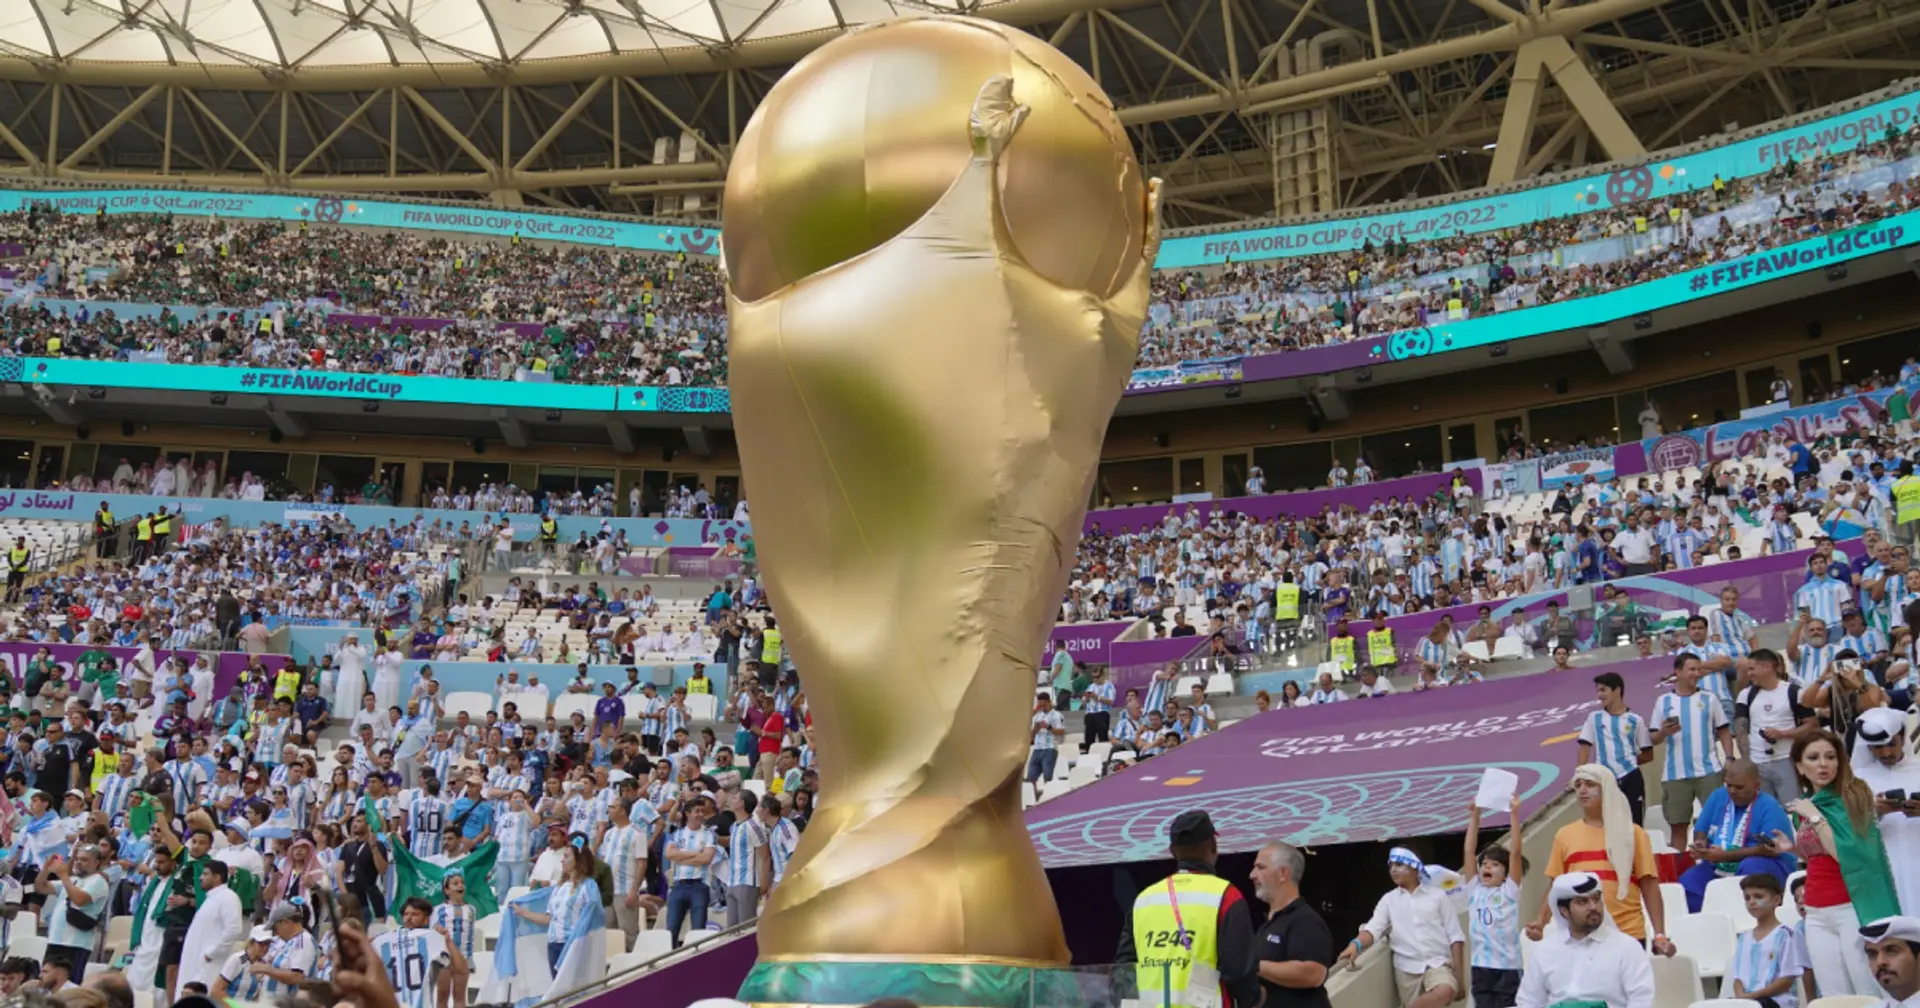 Qui voulez-vous gagner la Coupe du monde et pourquoi ?